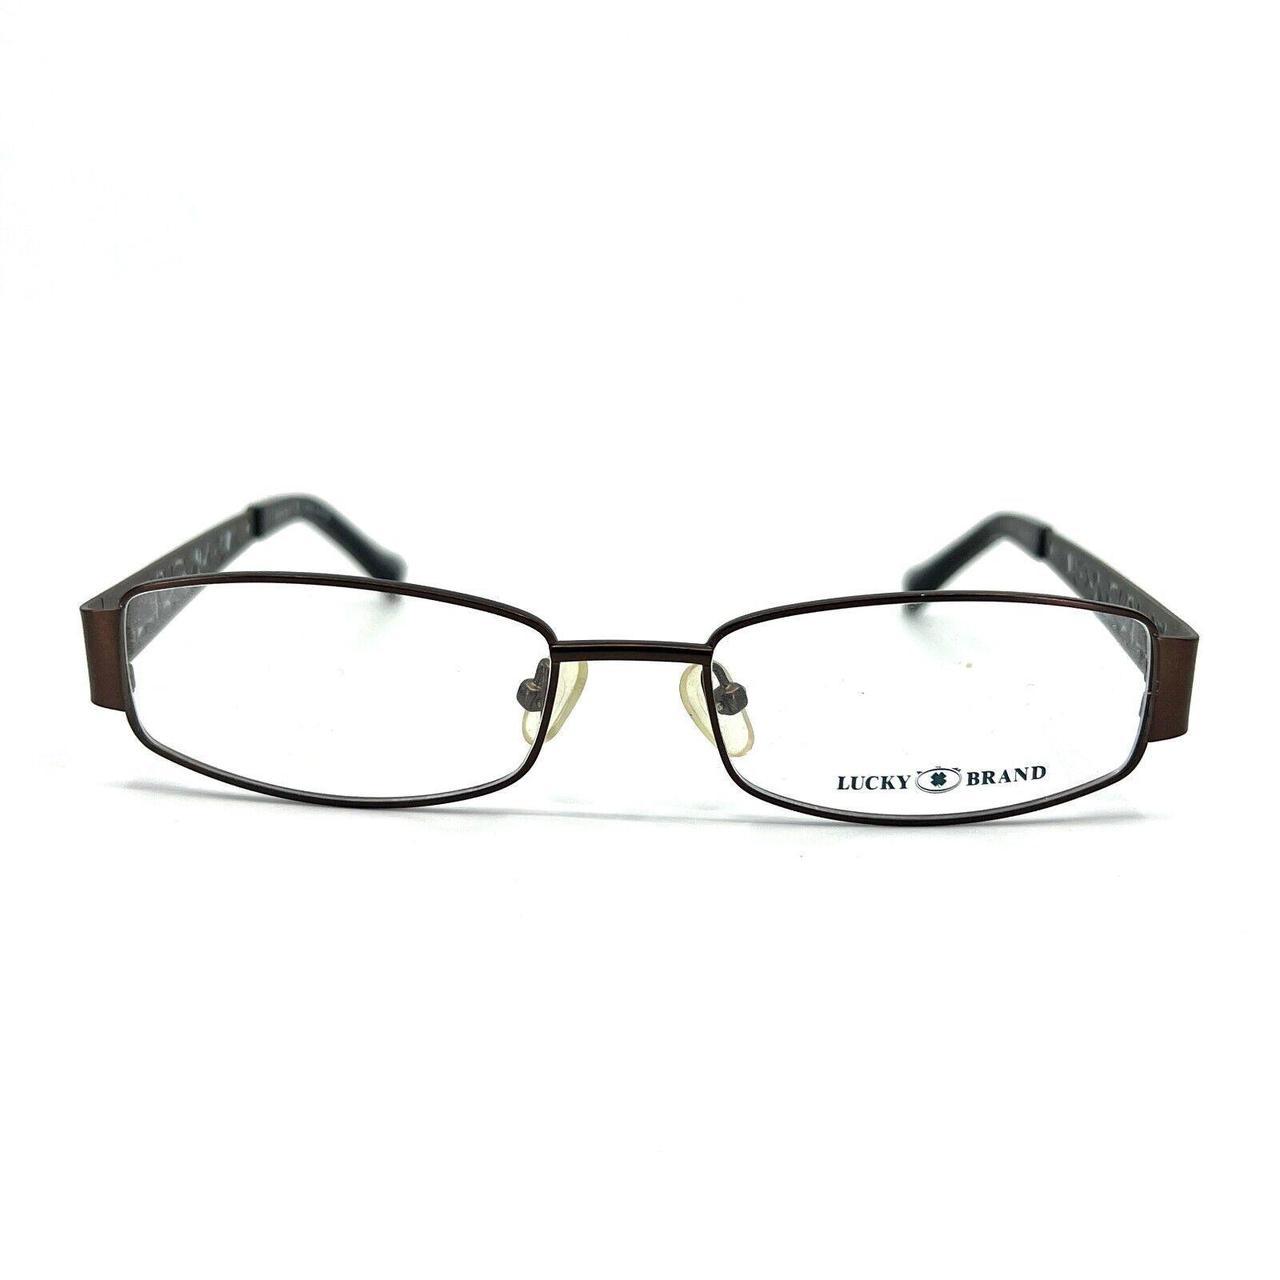 Lucky Brand Ivy Eyeglasses Frames Brown metal... - Depop